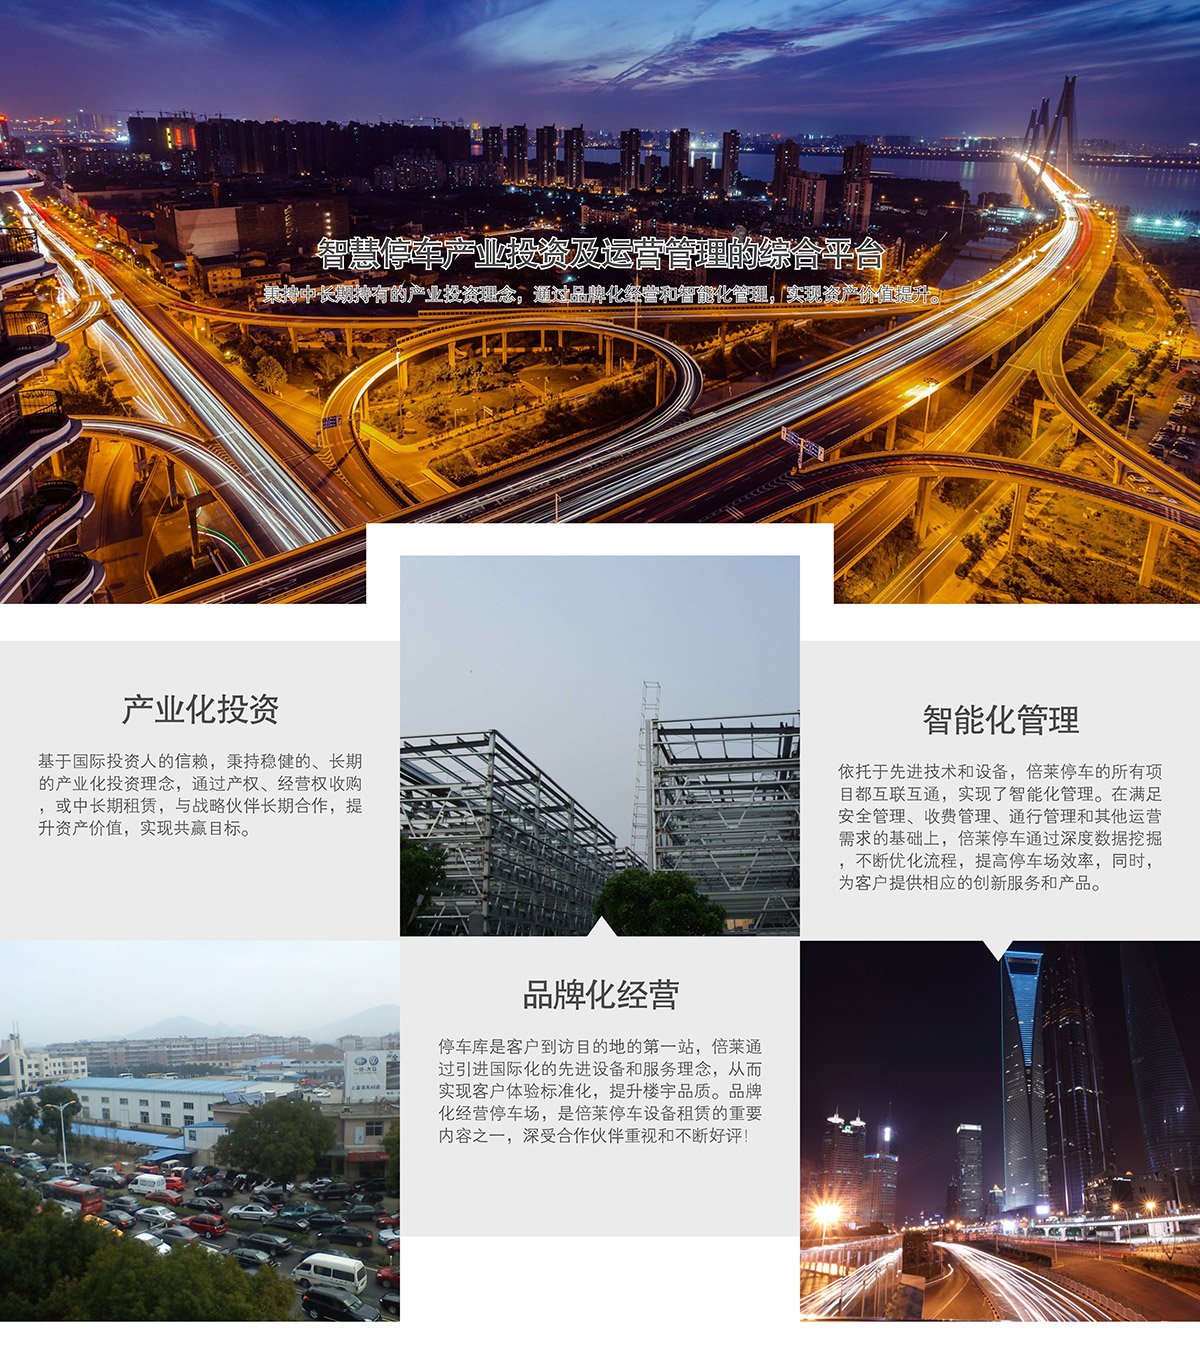 重庆智慧停车产业投资及运营管理的综合平台.jpg